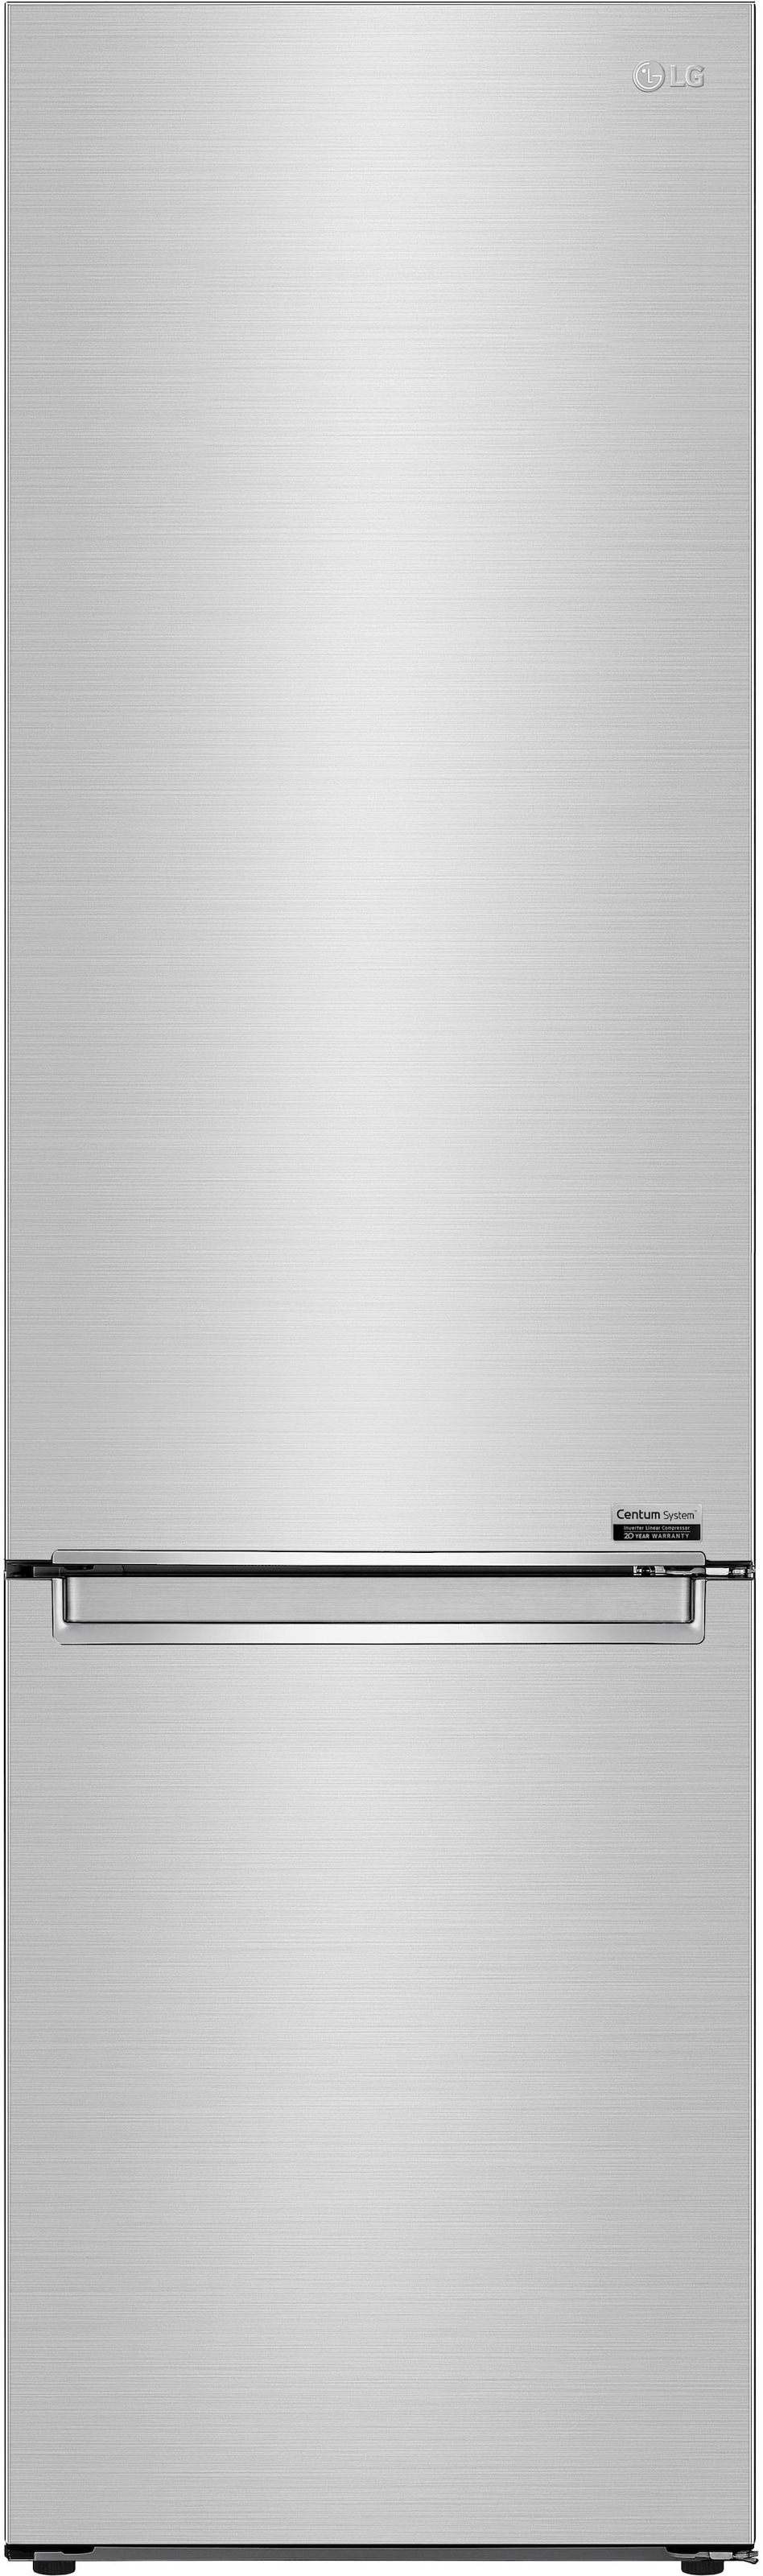 LG Kühl-/Gefrierkombination, GBB92STBAP, 203 cm hoch, 59,5 cm breit jetzt  kaufen bei OTTO | Kühlschränke